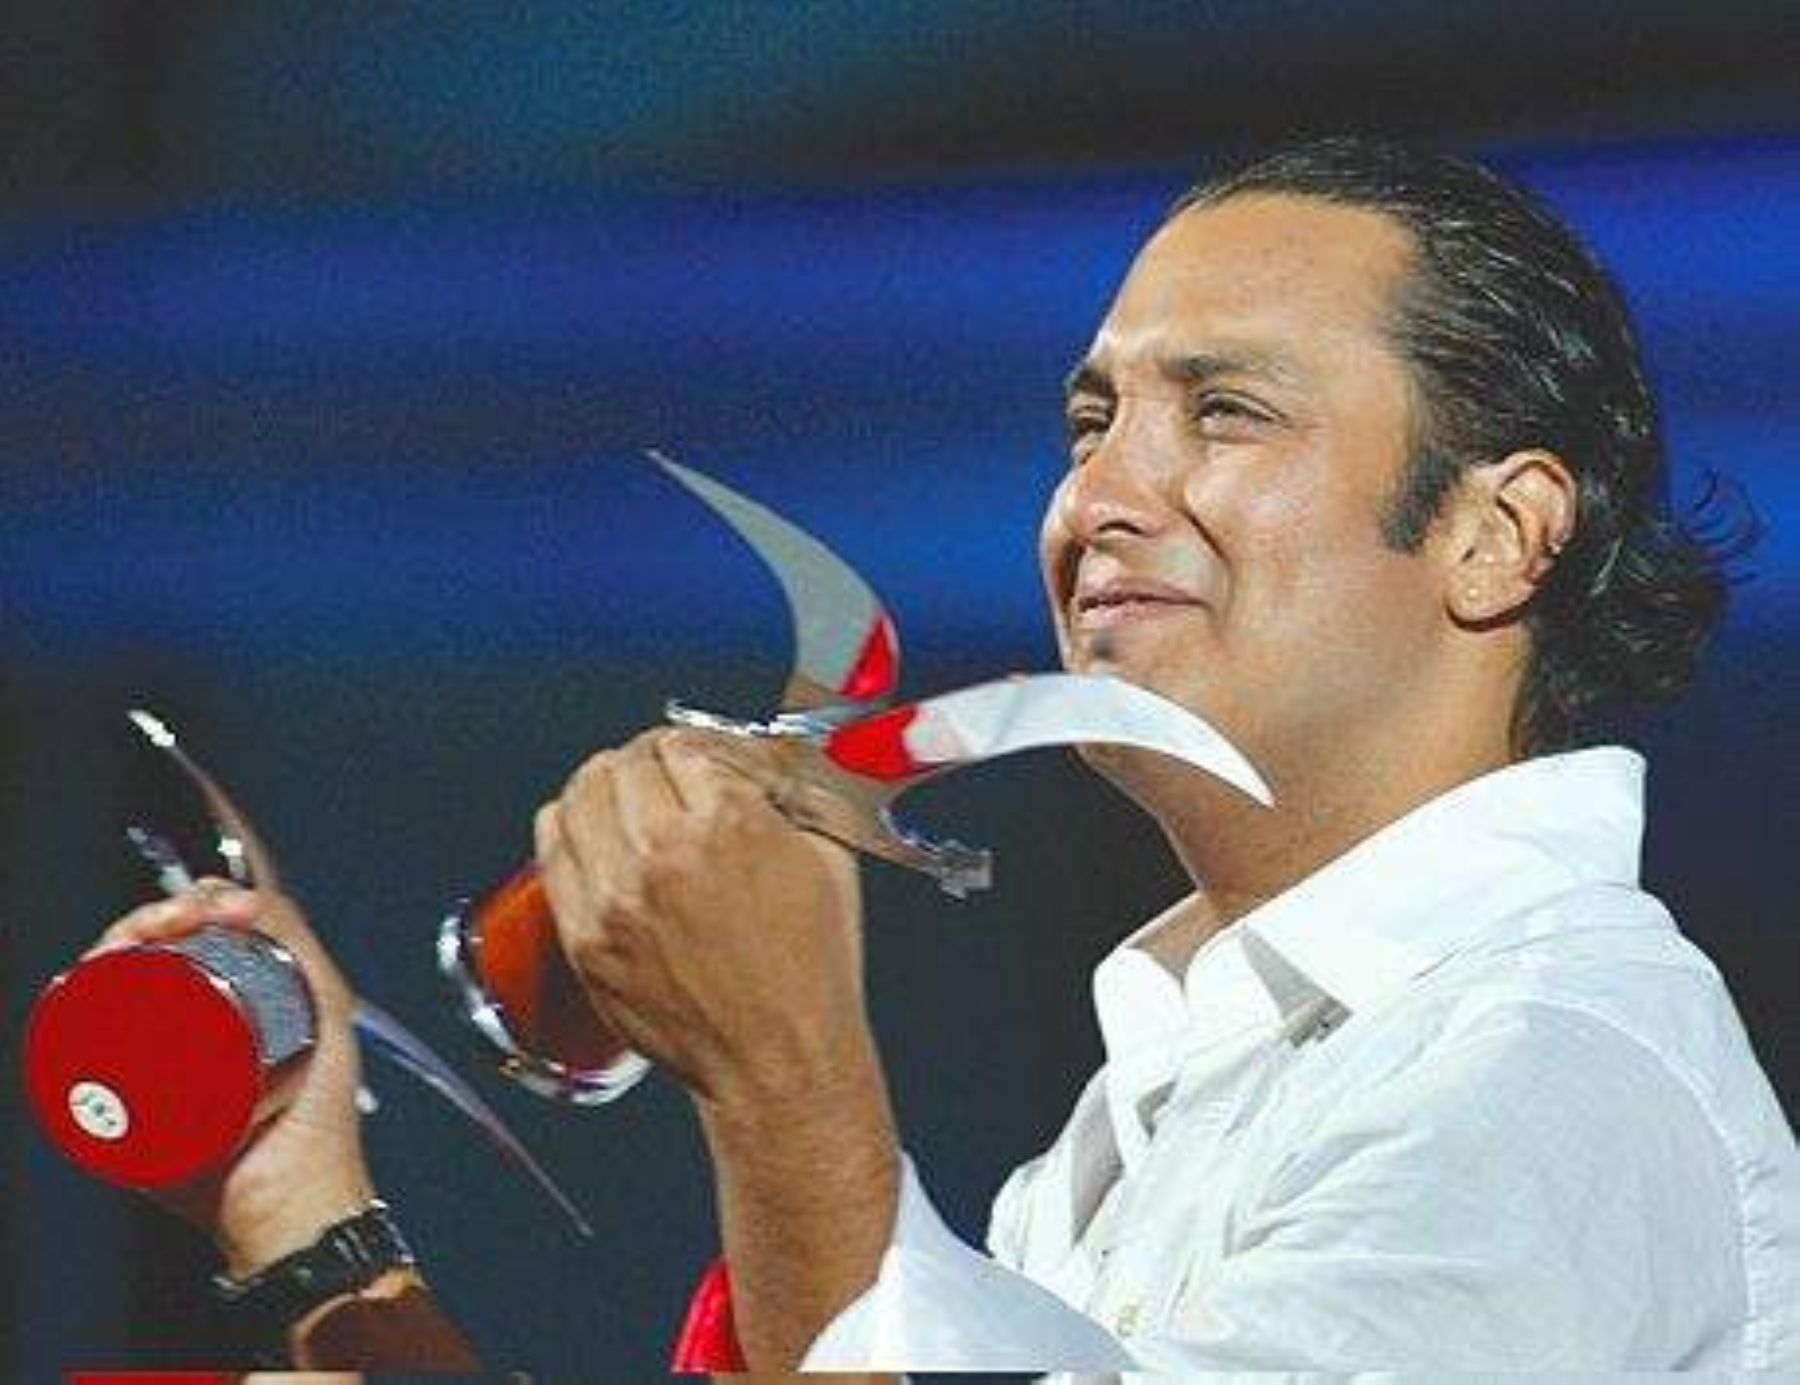 Cantante Jorge Pardo, cuando ganó la Gaviota de Oro en una edición pasada del festival de "Viña del Mar"